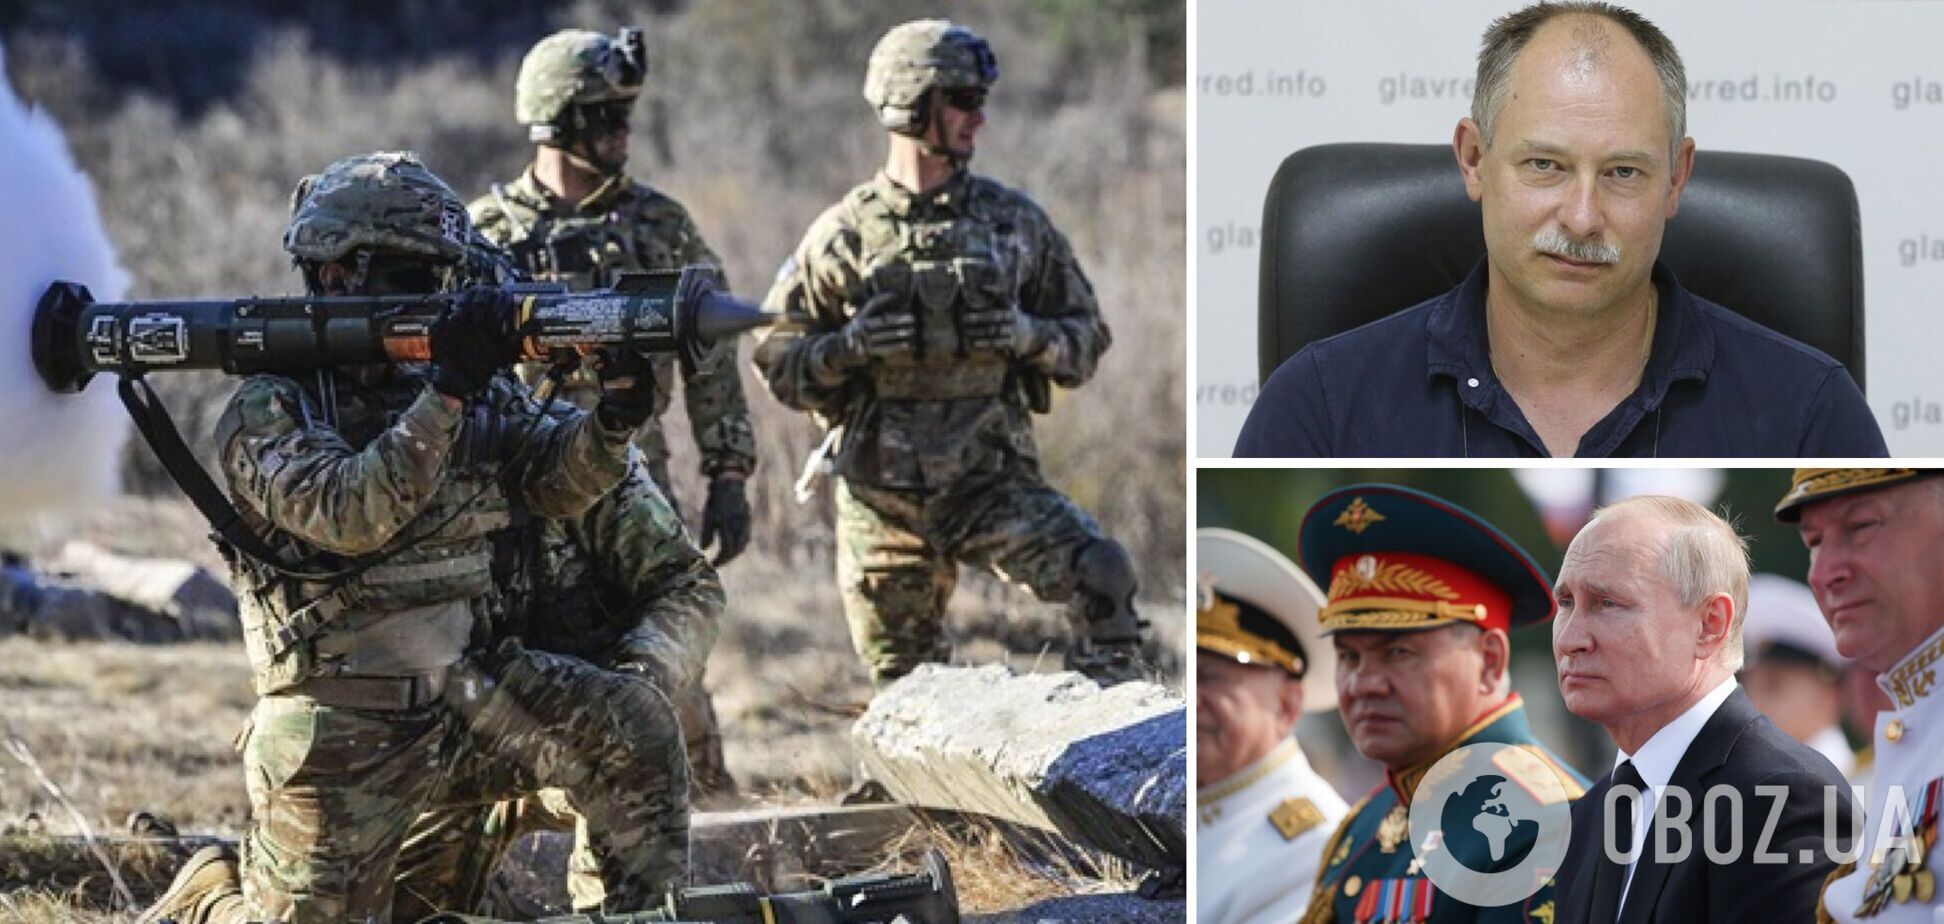 Жданов: ВСУ готовят активную фазу контрнаступления, у Путина проблемы с войсками и техникой. Интервью